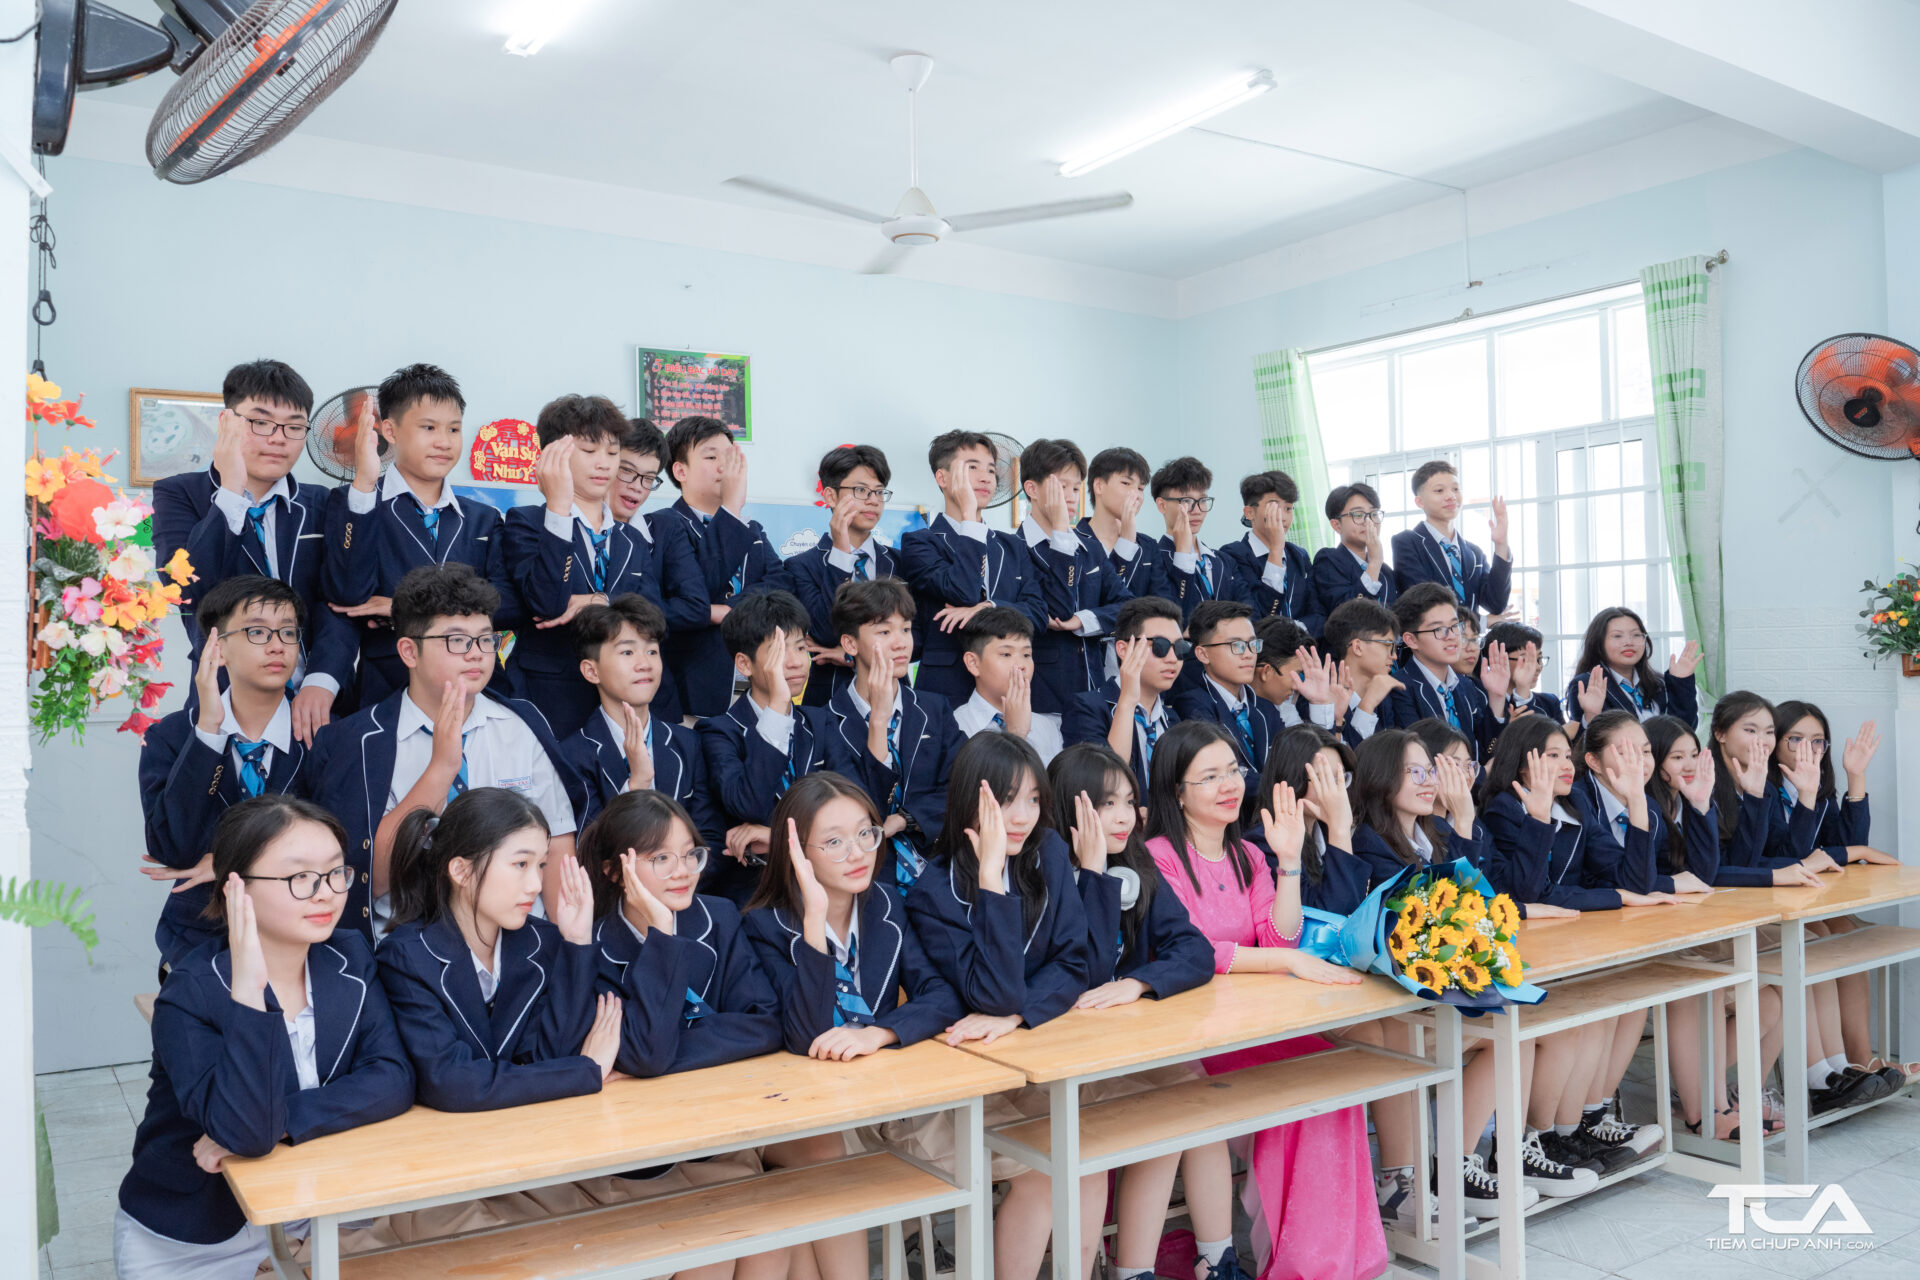 cho thuê đồng phục học sinh concept Hàn Quốc chụp ảnh kỷ yếu